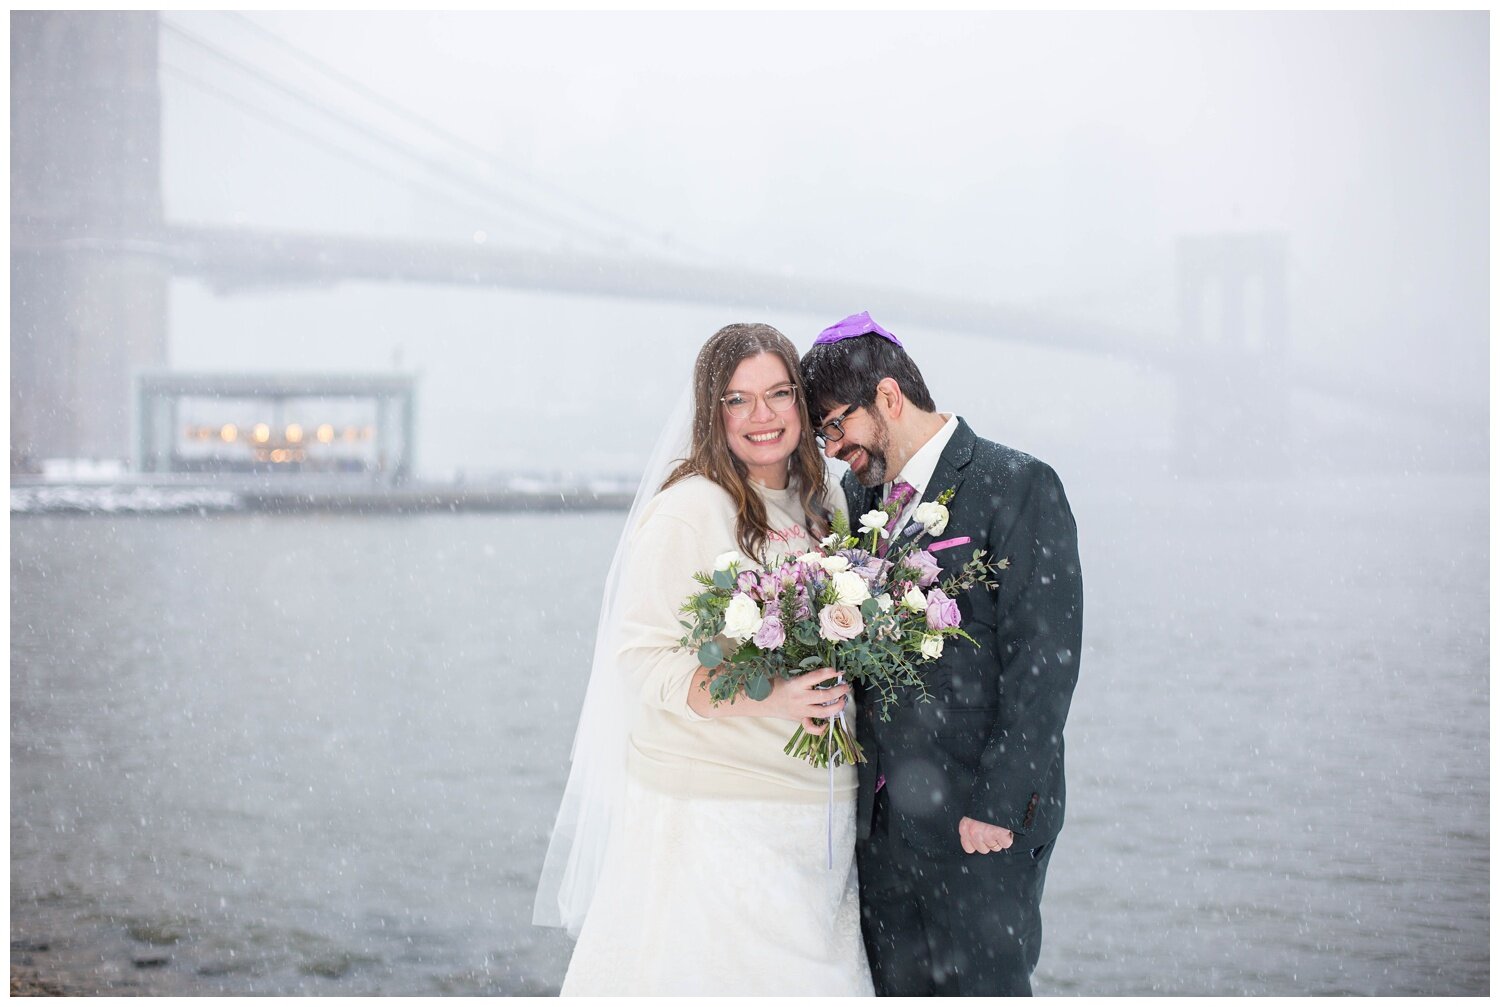 Kate-Alison-Photography-NYC-Dumbo-Loft-Winter-Wedding_0014.jpg